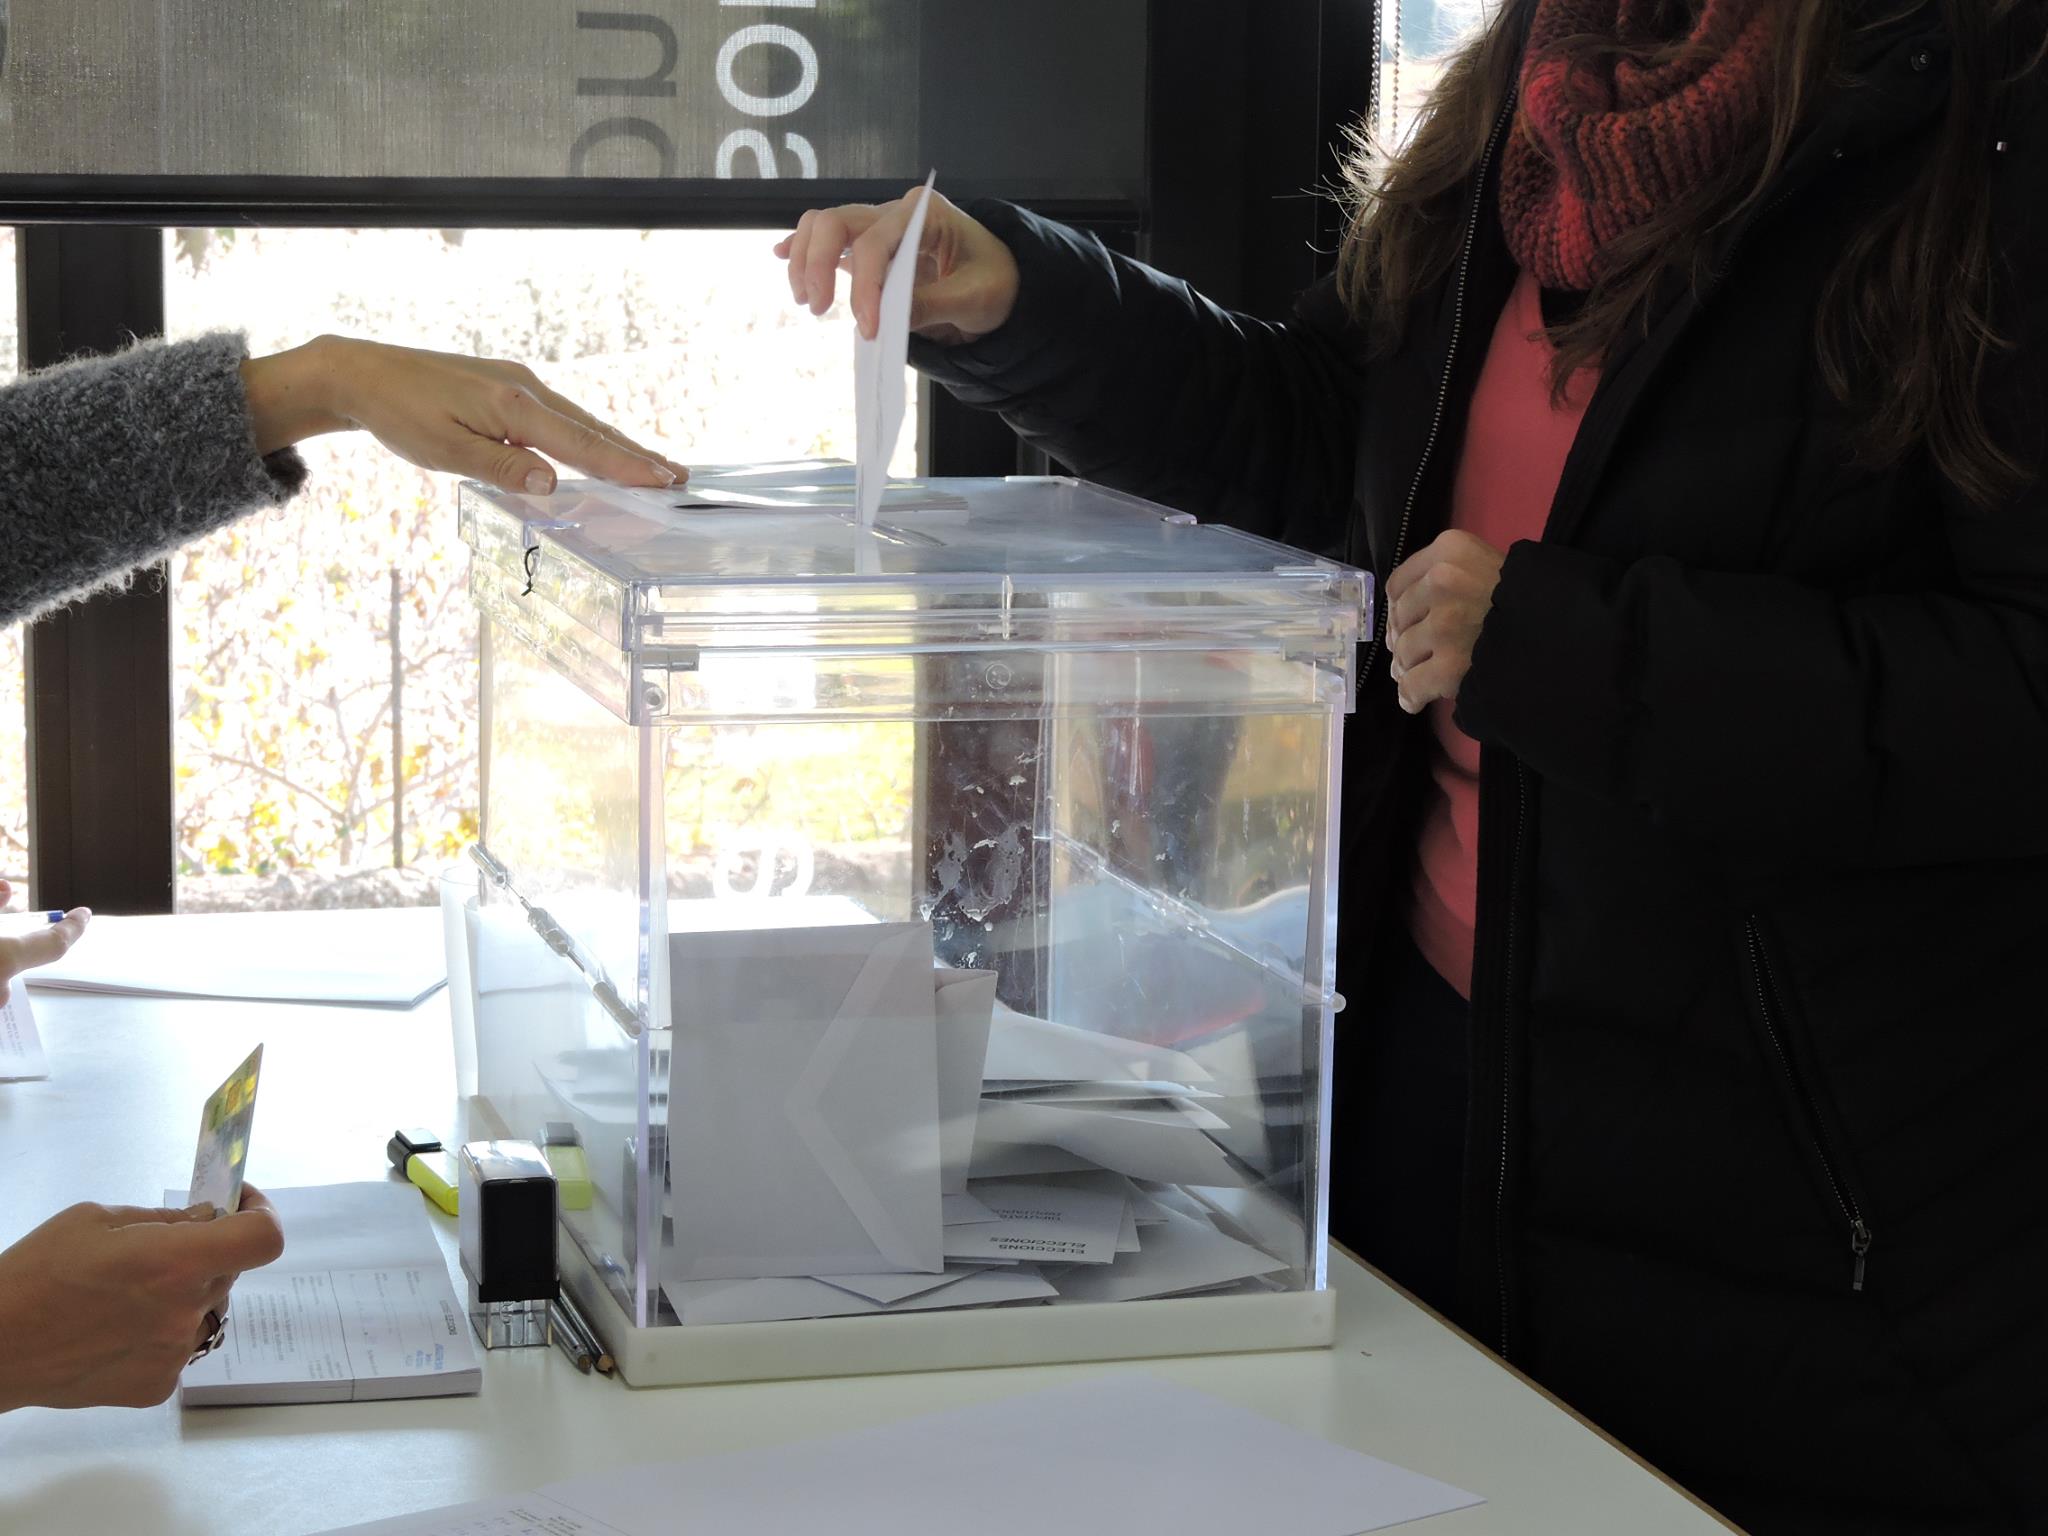 Del 25 de març a l'1 d'abril es pot consultar el cens electoral per a les Eleccions al Parlament Catalunya